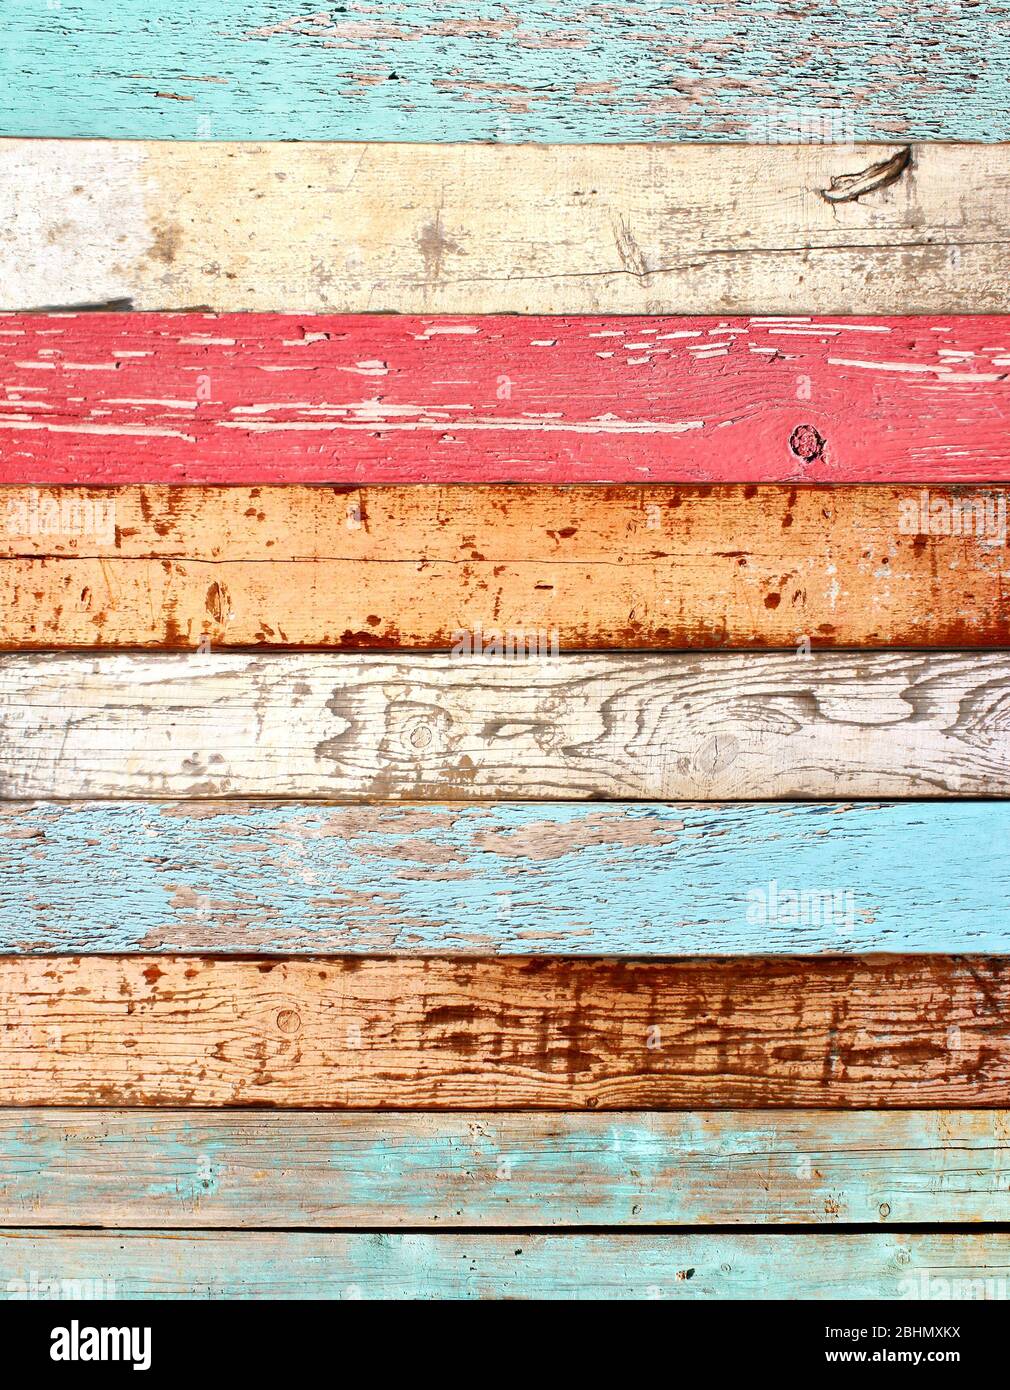 Hãy chiêm ngưỡng vẻ đẹp hoang sơ của những tấm ván madera vintage với lớp sơn gãy của màu trắng, đỏ và nâu. Tận hưởng màu sắc và giác quan kiến thức của bạn vì từng đường nét đều chứa đựng sự độc đáo và sự kiên nhẫn của thời gian. Hãy cùng đắm chìm vào thế giới madera vintage lộng lẫy này!